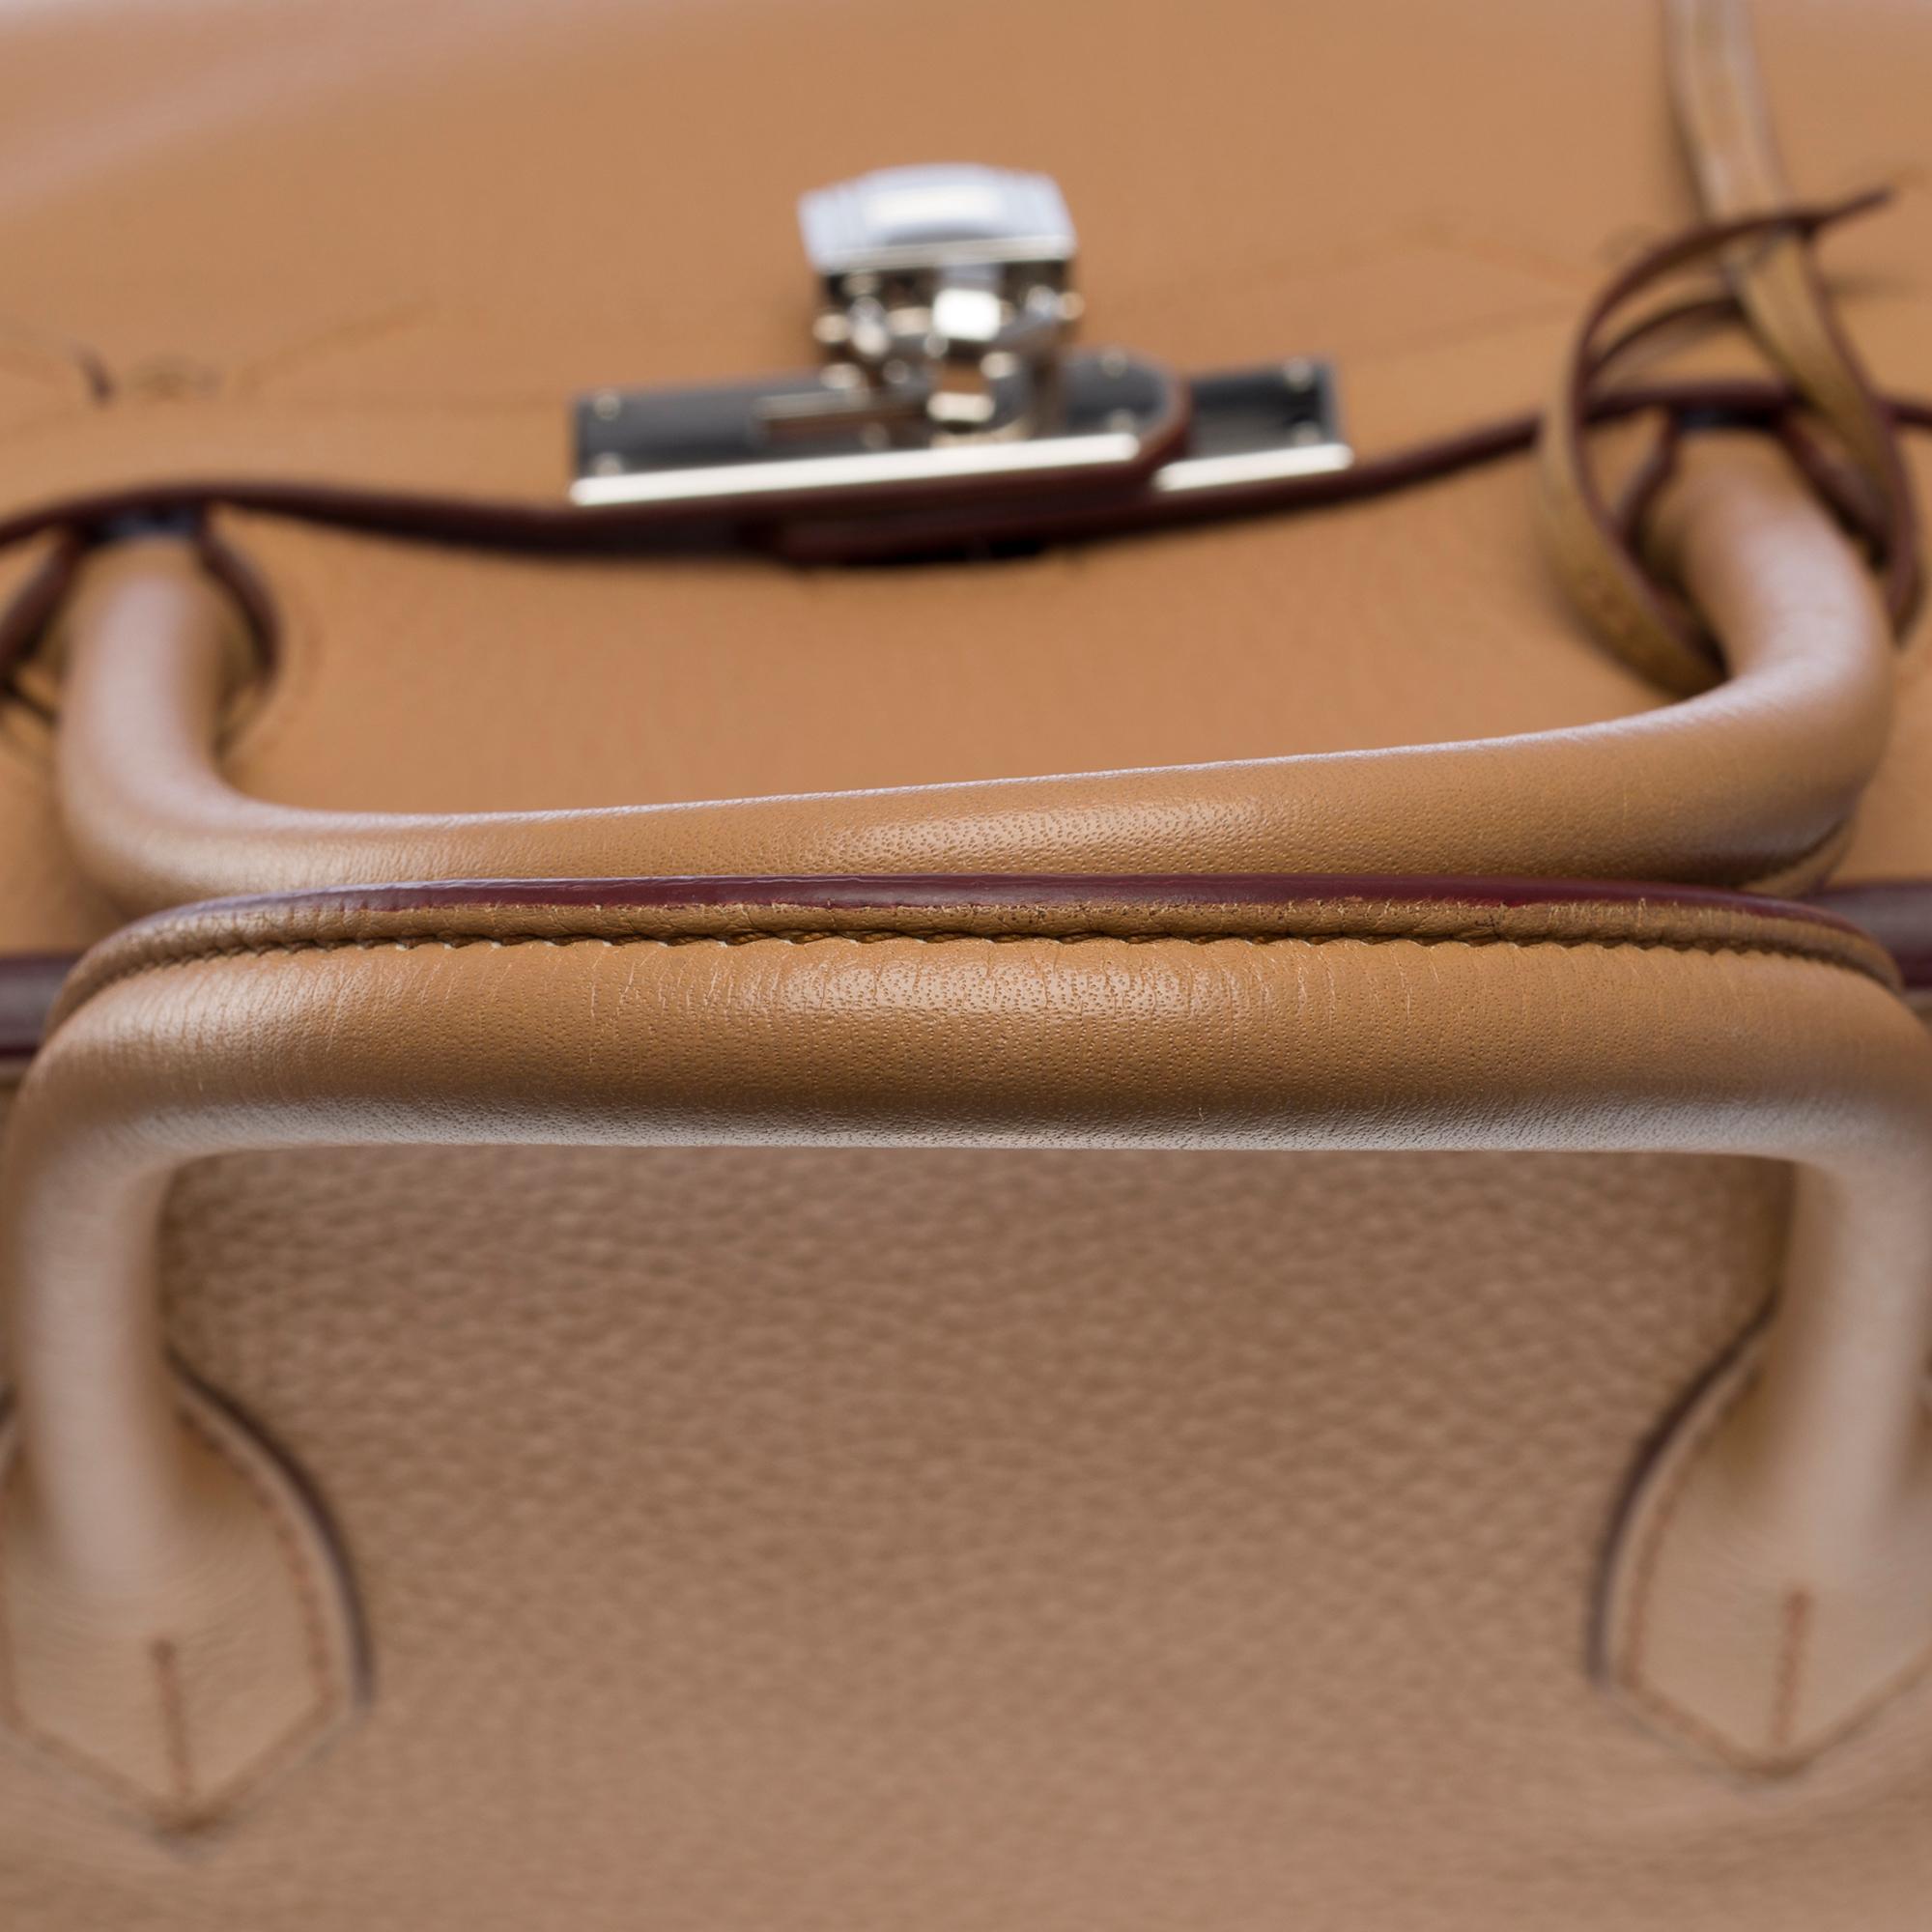 Hermes Birkin 40 handbag in Tabac Togo leather, SHW For Sale 6